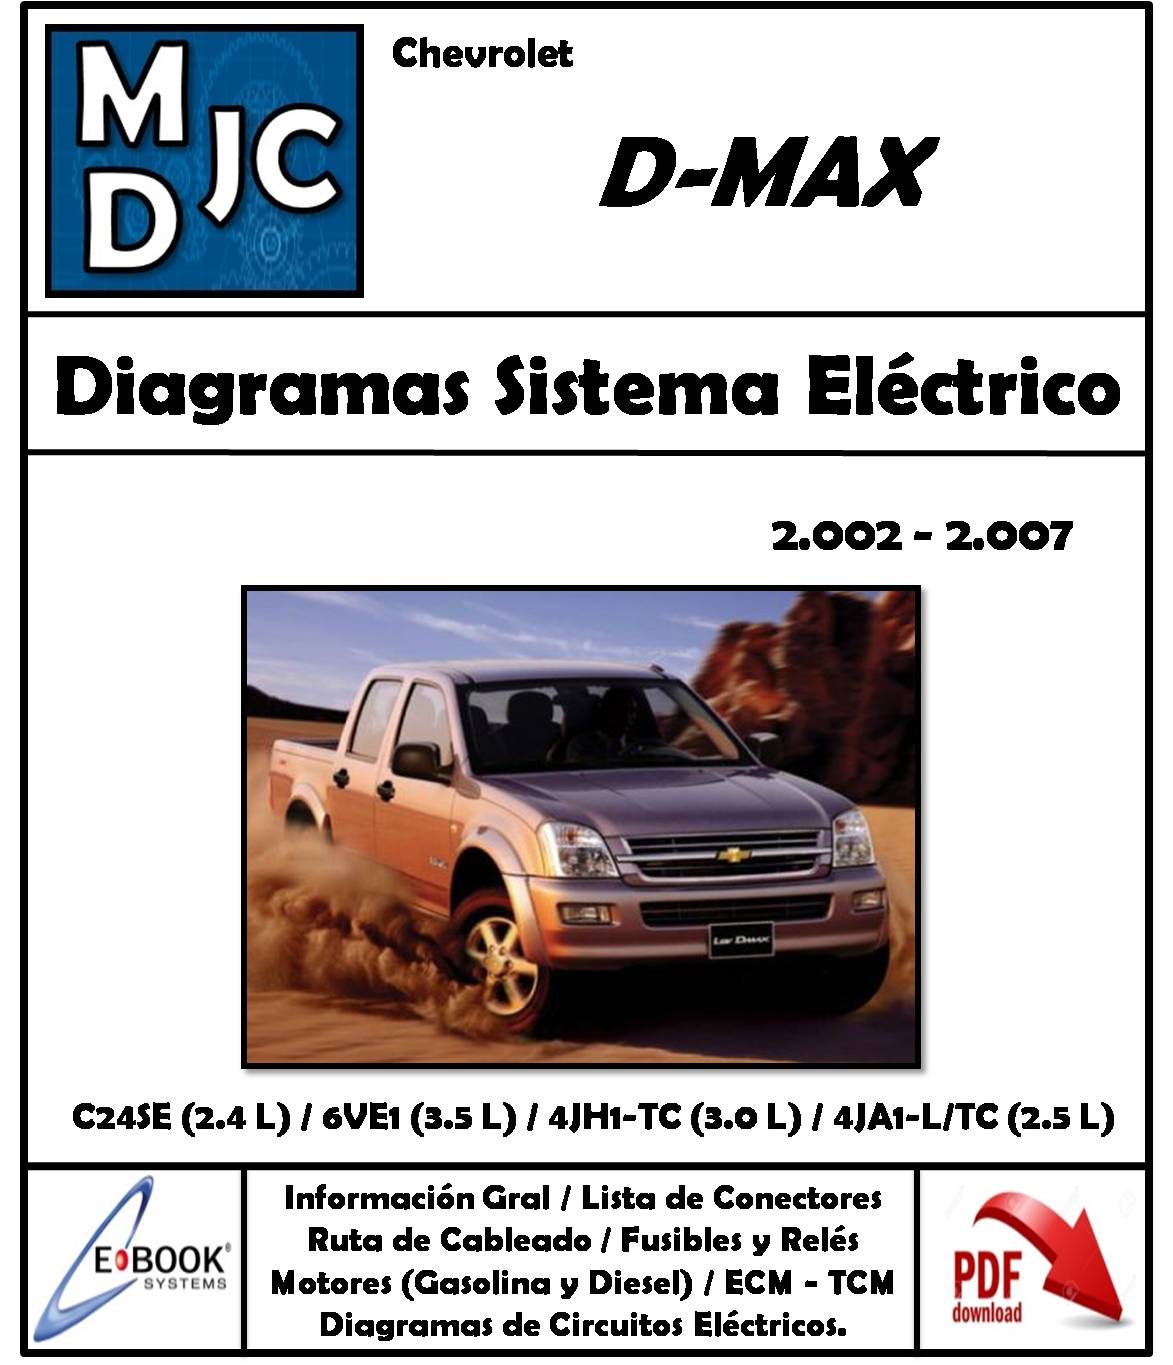 Diagramas de Cableado Sistema Eléctrico Chevrolet Isuzu D-Max (2002-2007)